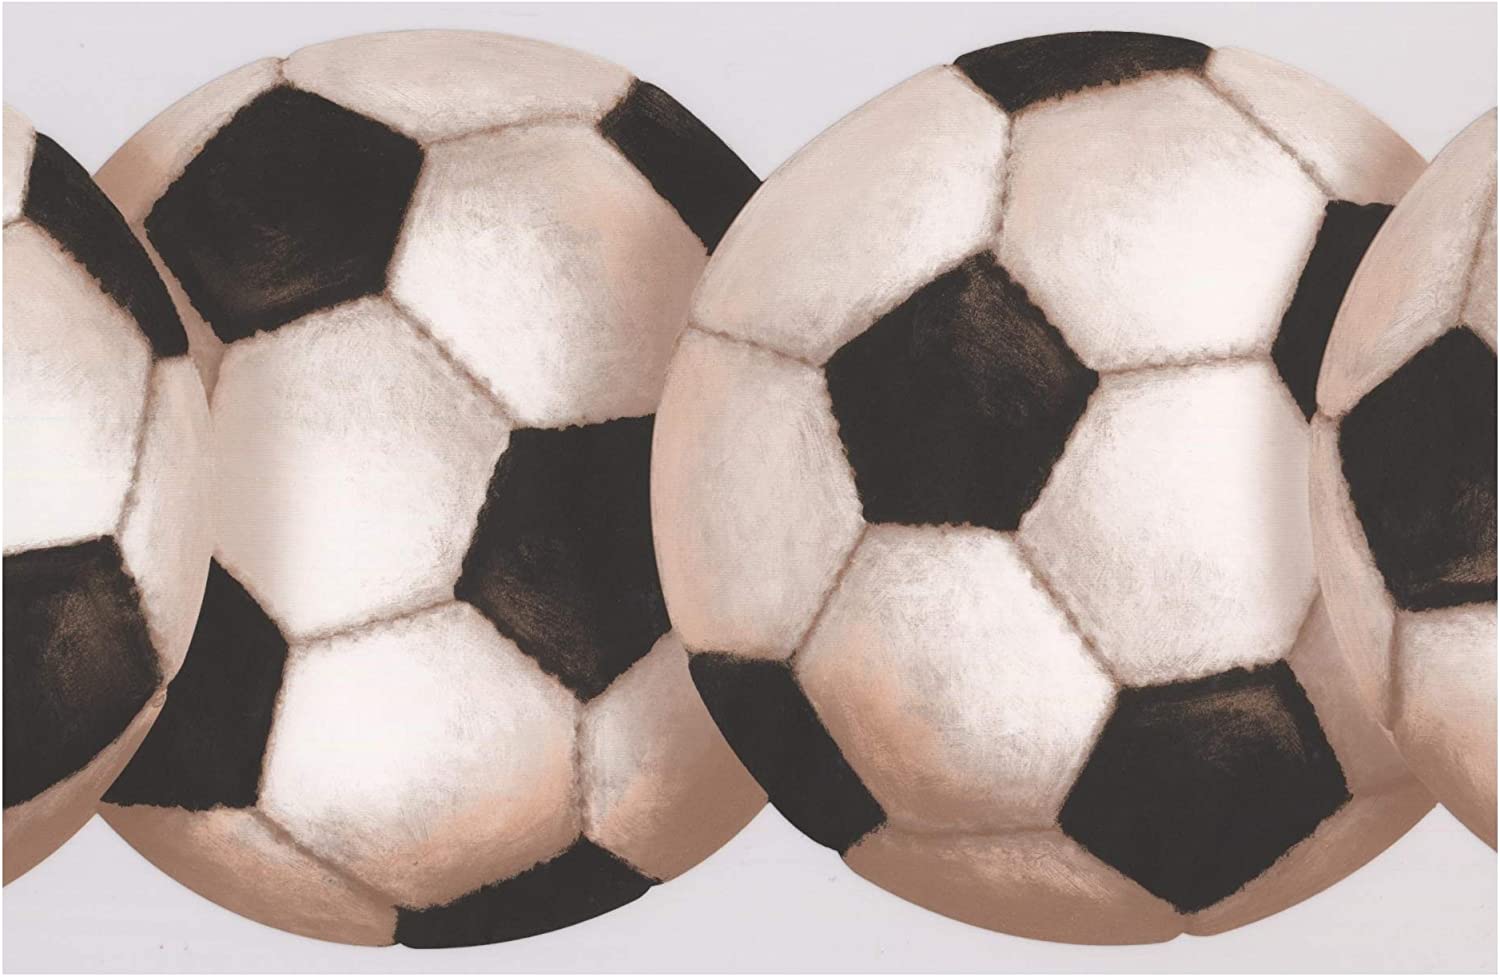 Soccer Ball Retro Wallpaper Border Sport Design, Roll 15' x 8: Amazon.ca: Home & Kitchen